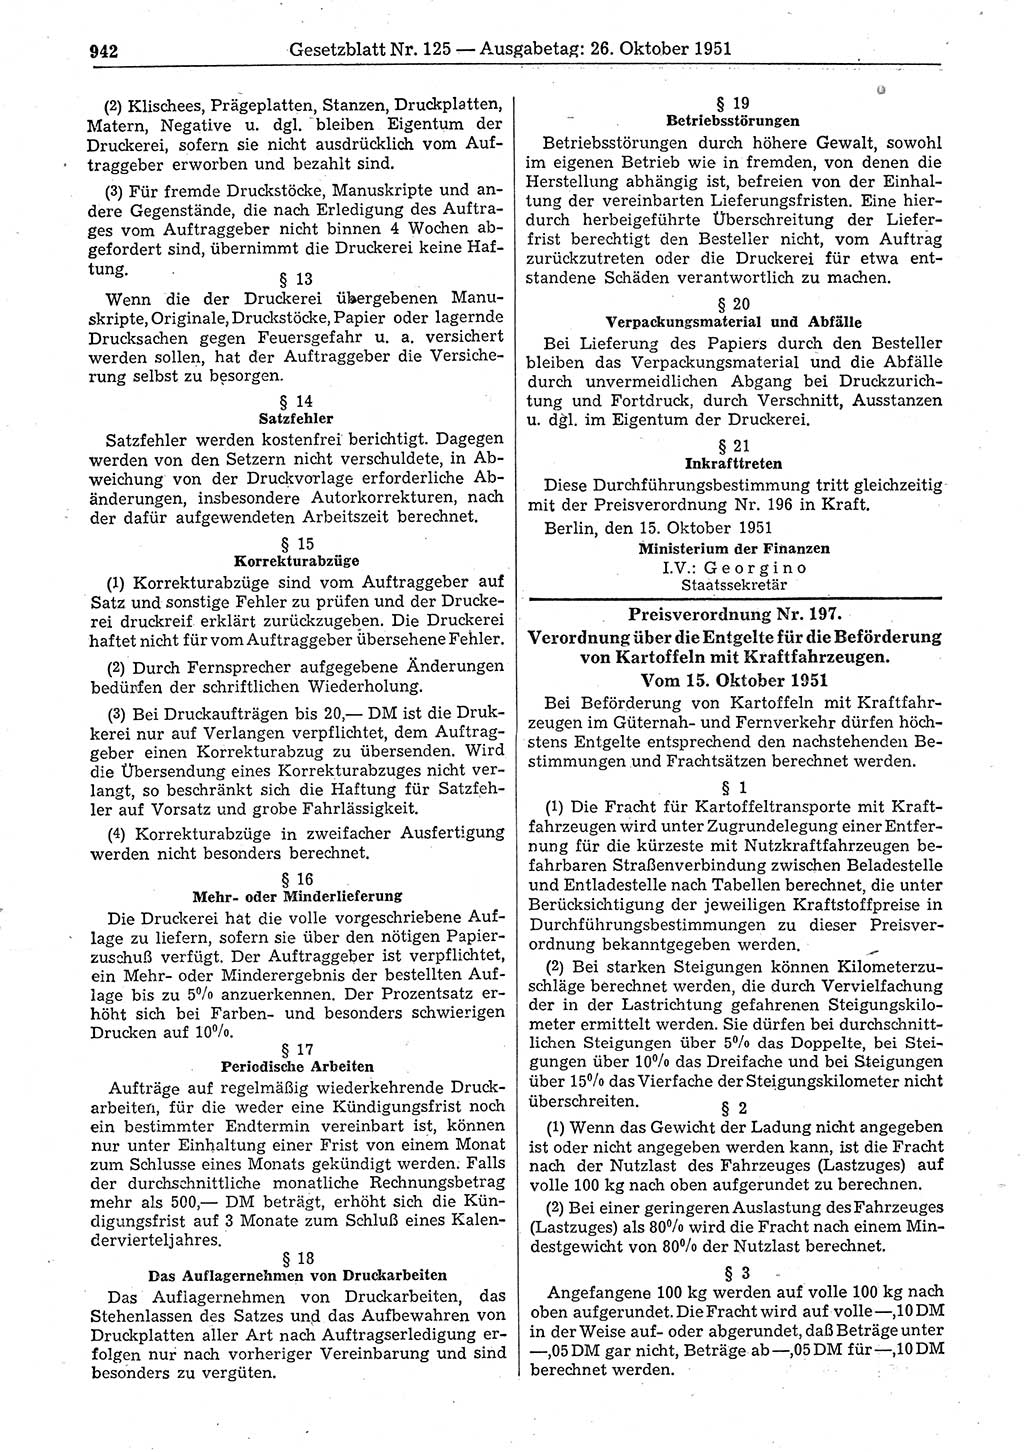 Gesetzblatt (GBl.) der Deutschen Demokratischen Republik (DDR) 1951, Seite 942 (GBl. DDR 1951, S. 942)